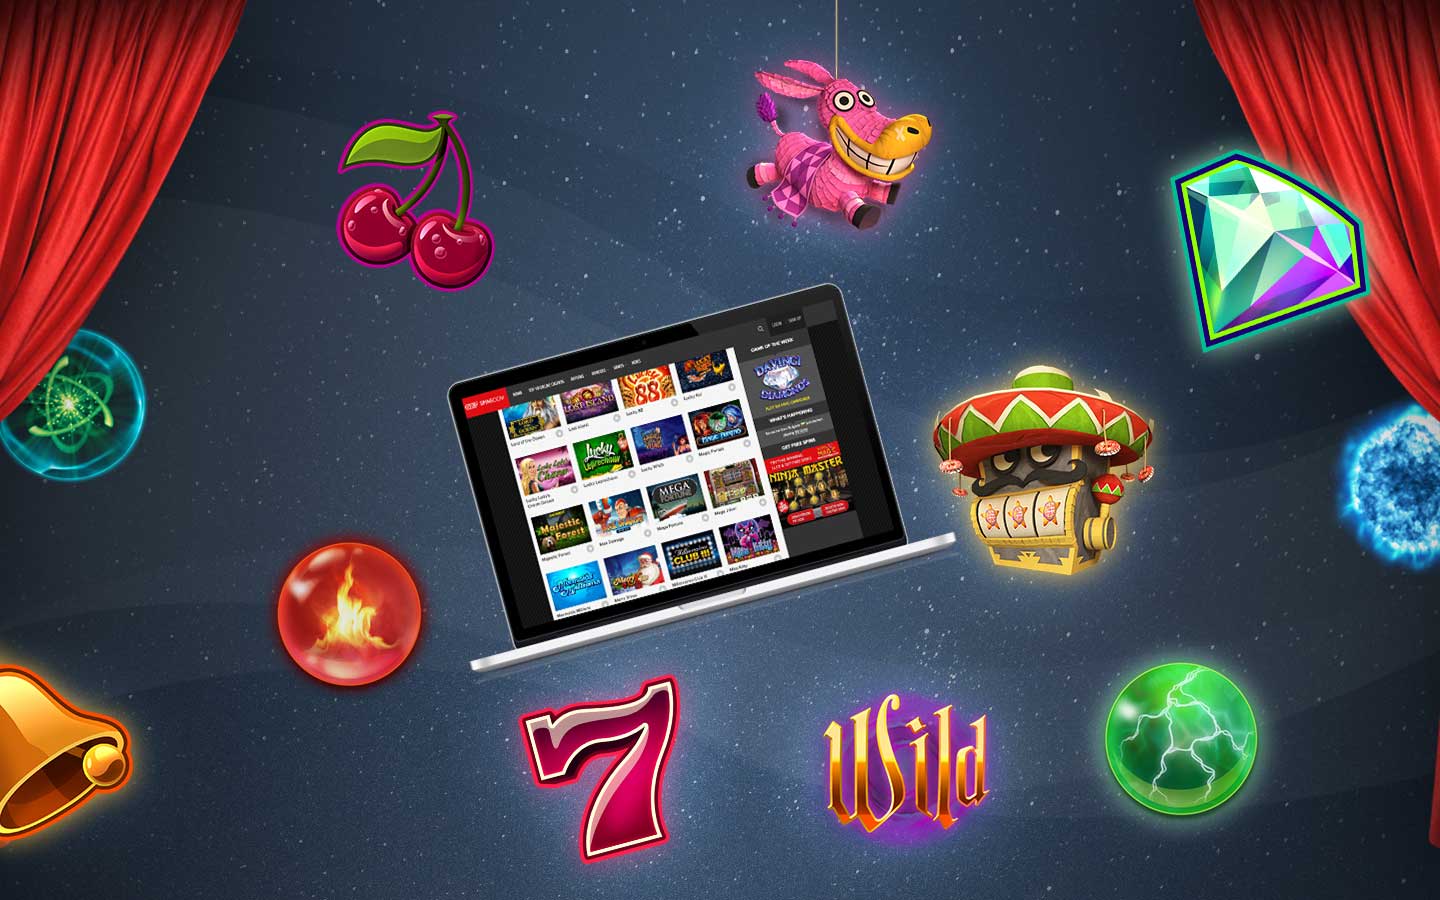 Play slots online casino игровые автоматы руслото